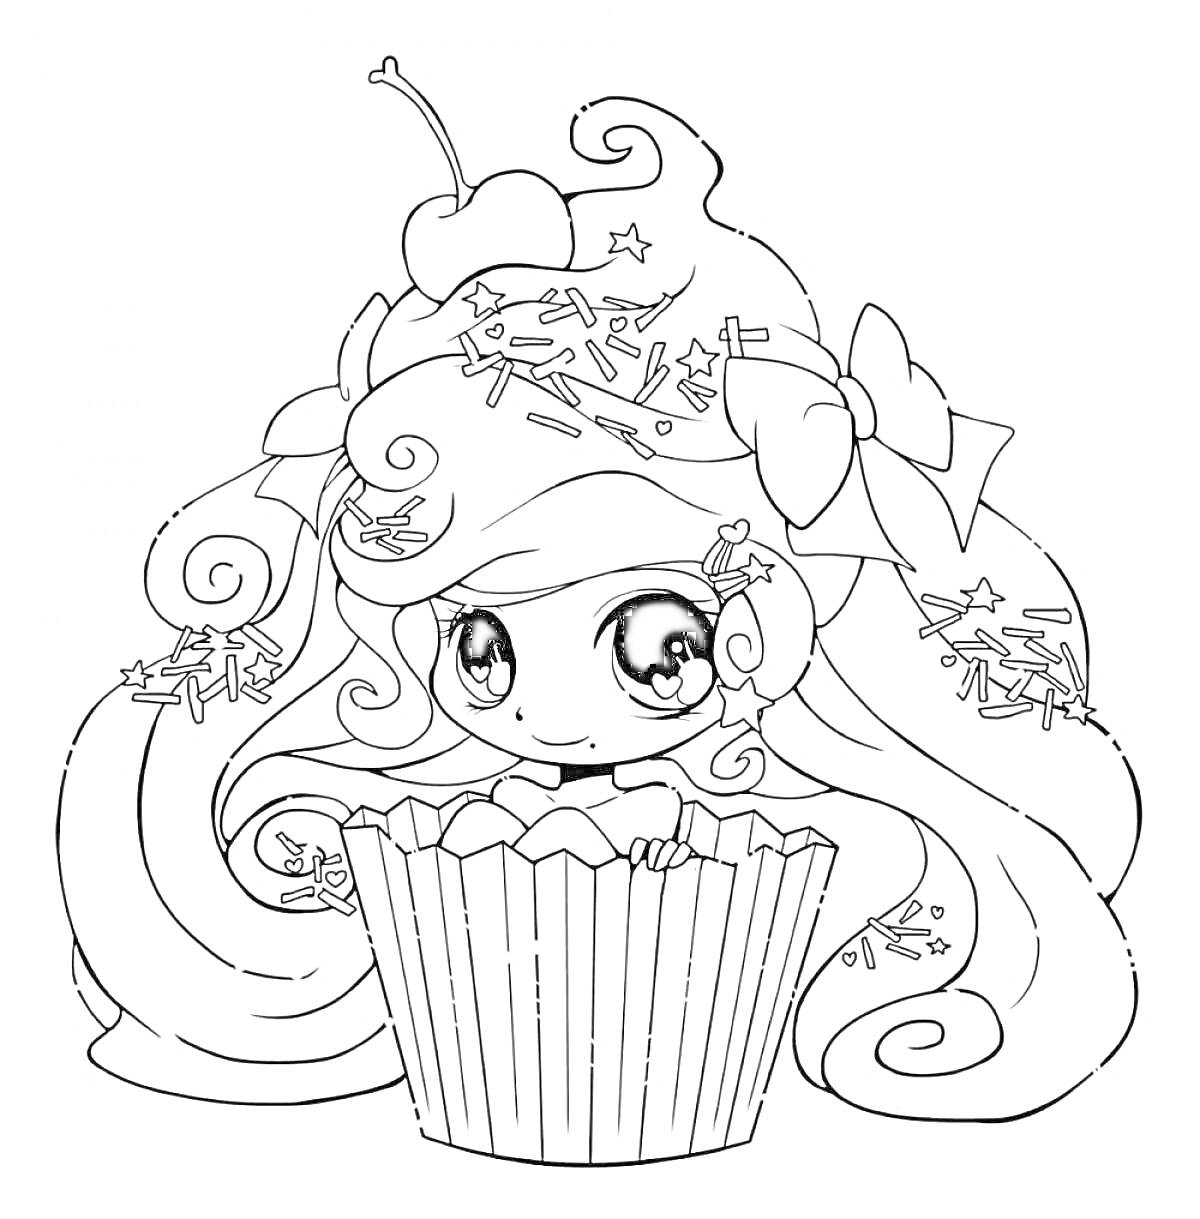 Раскраска Девочка с длинными волосами, украшенными посыпкой и вишней, сидящая в кексе